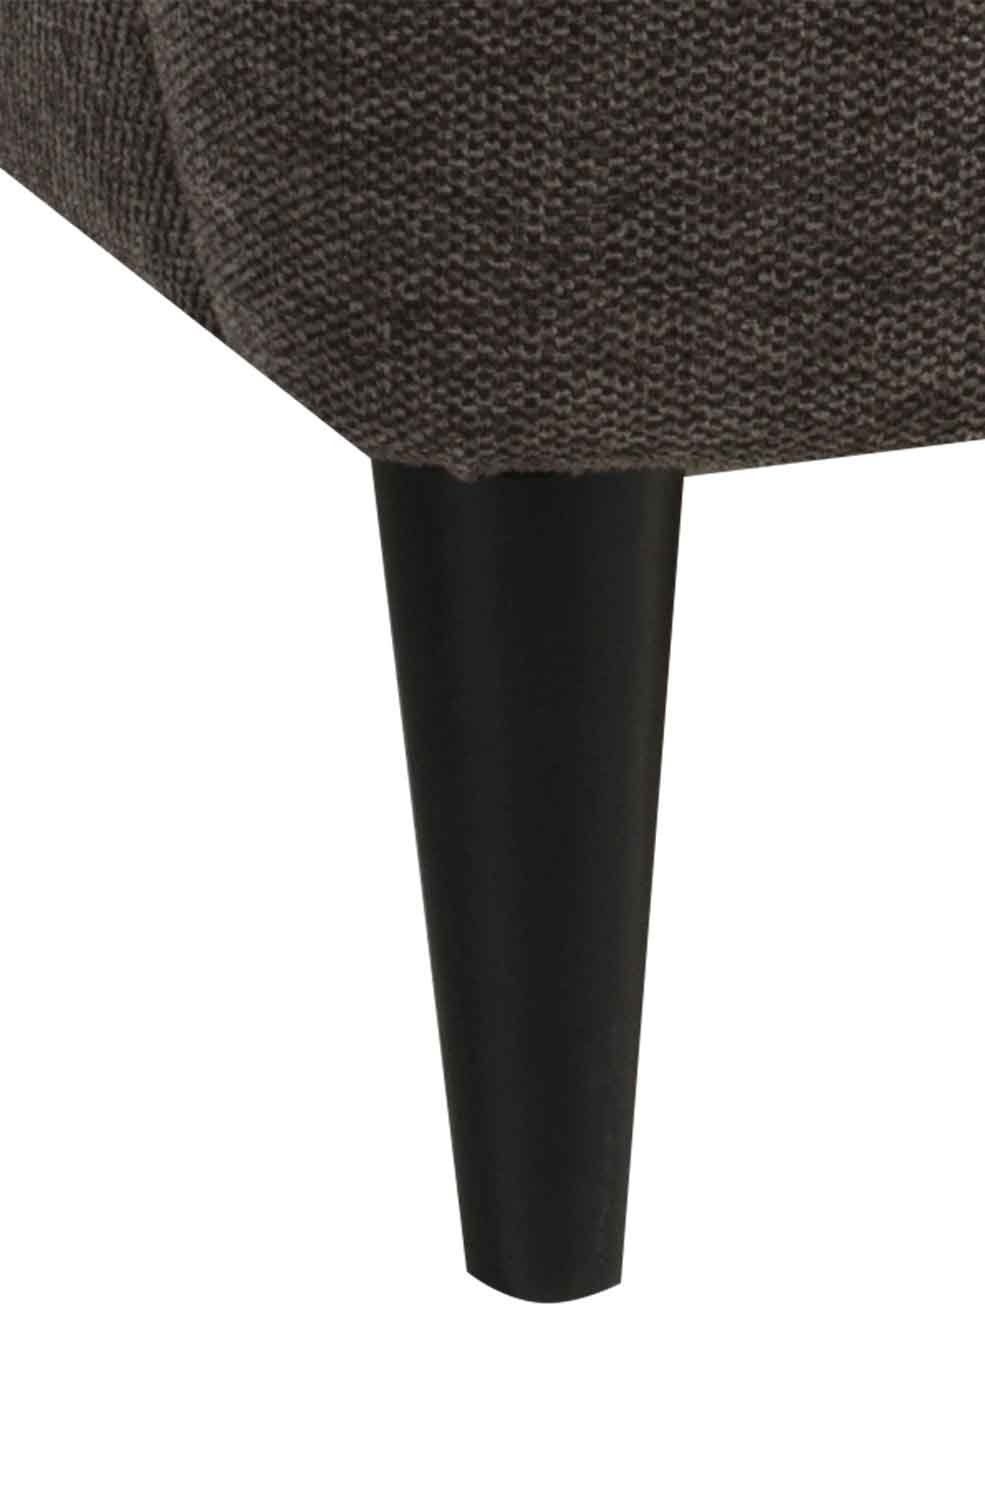 Black Red White OSKAR, Sessel), Webstoffbezug, Holzfüße (1 Ohrensessel Espressofarben